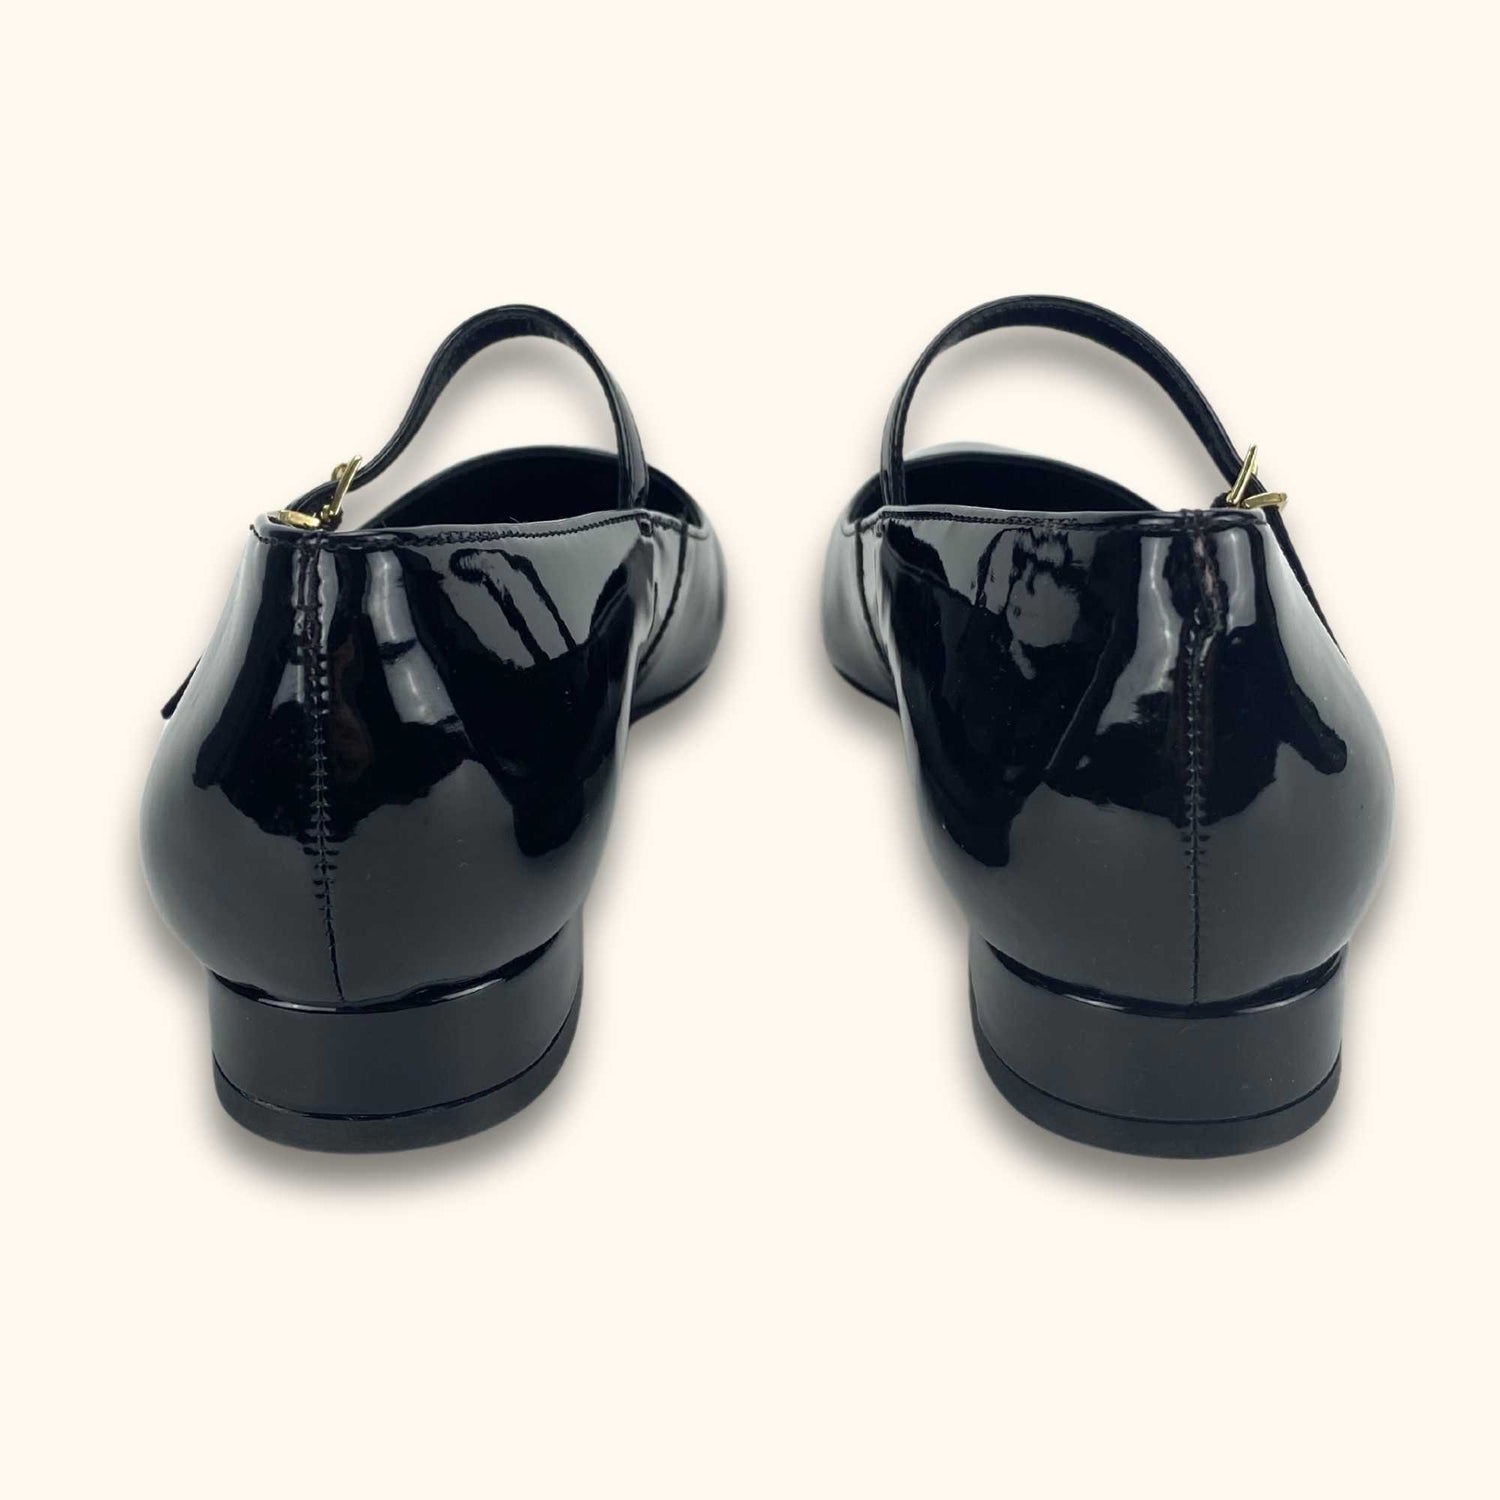 Dune London Flat Black Ballet Shoes - Size 3 - Dune - Flats